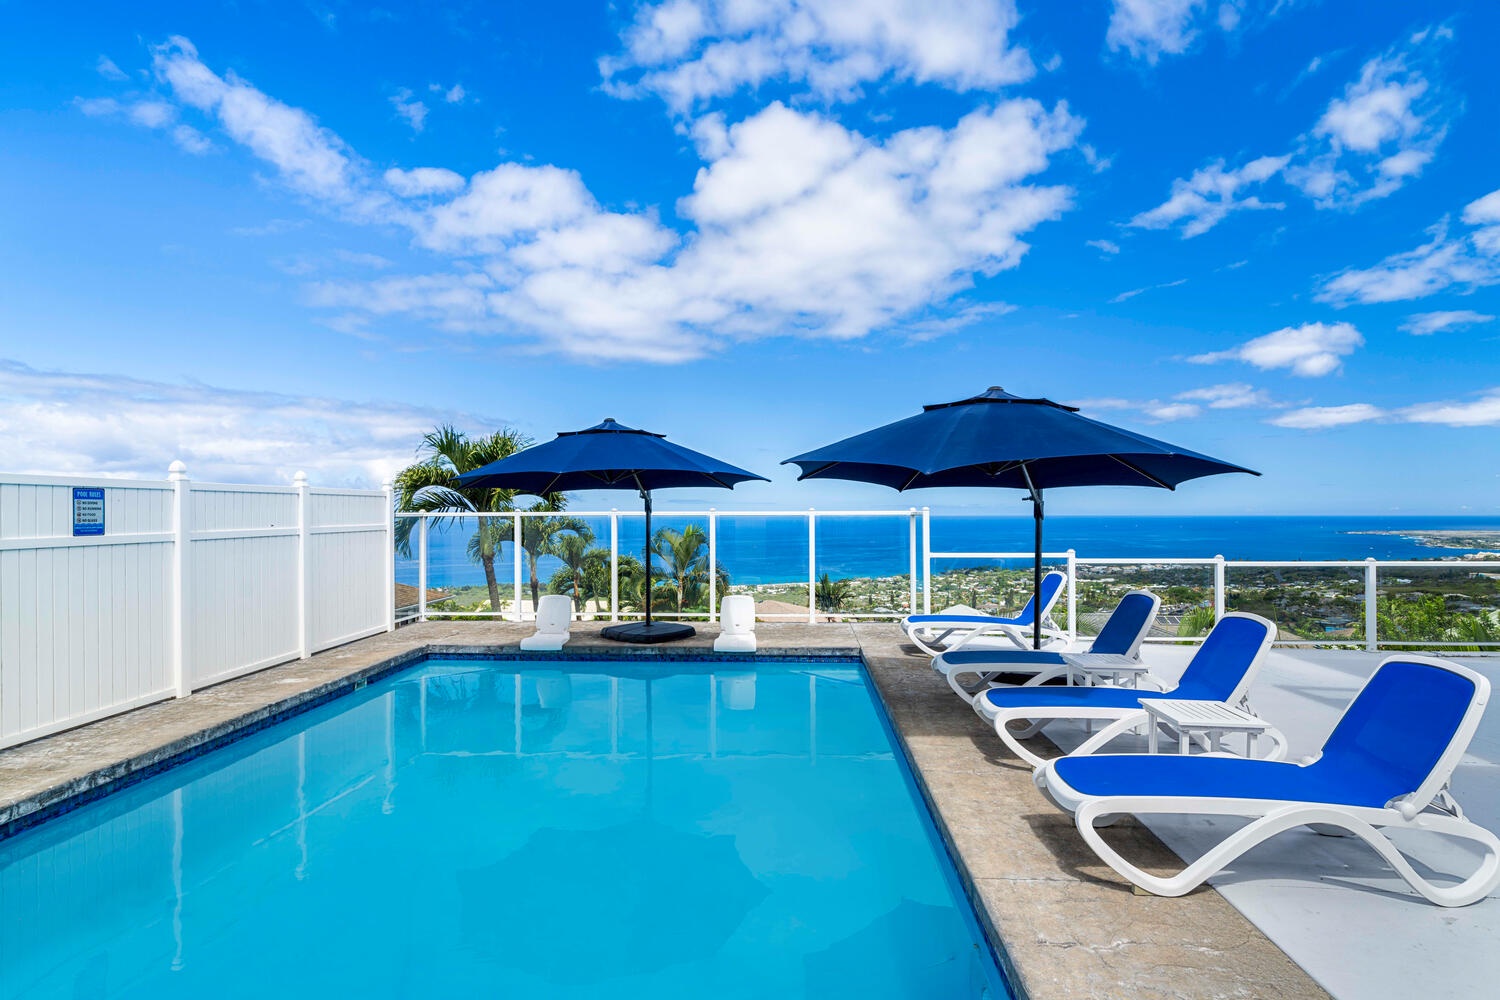 Kailua Kona Vacation Rentals, Honu O Kai (Turtle of the Sea) - Enjoy a col drink by the pool!